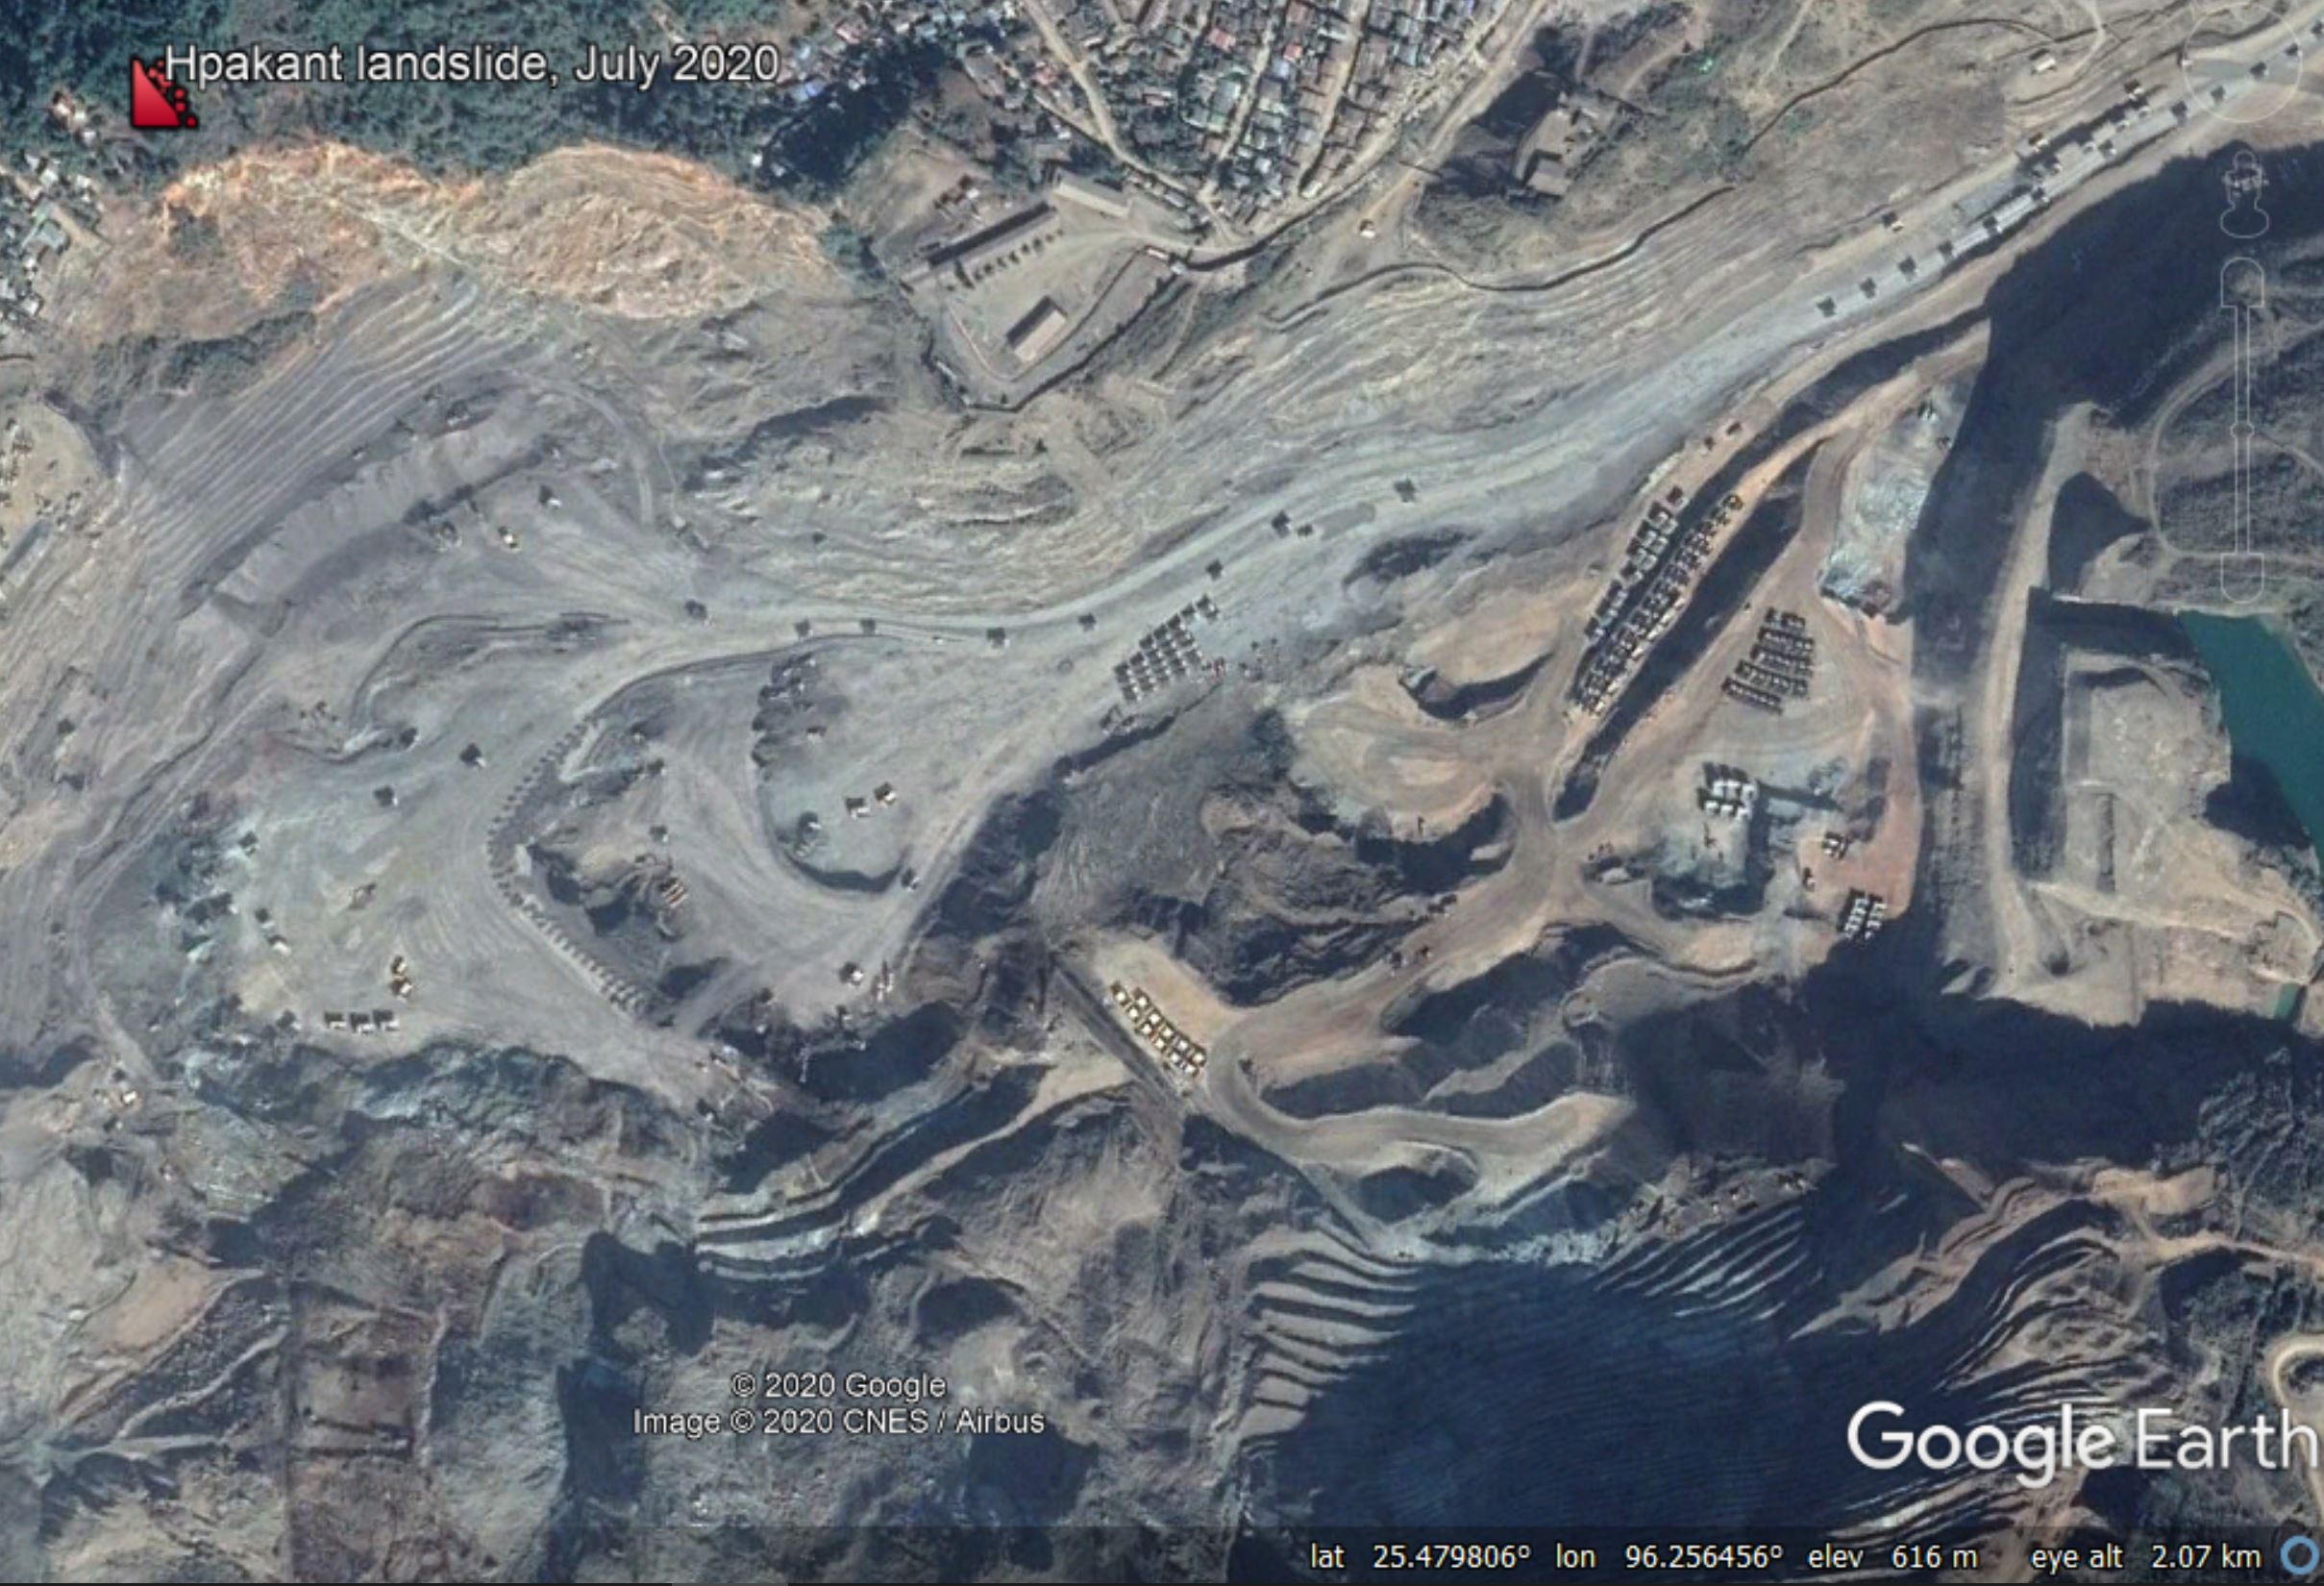 28 June 2020 Myanmar Jade mine landslide